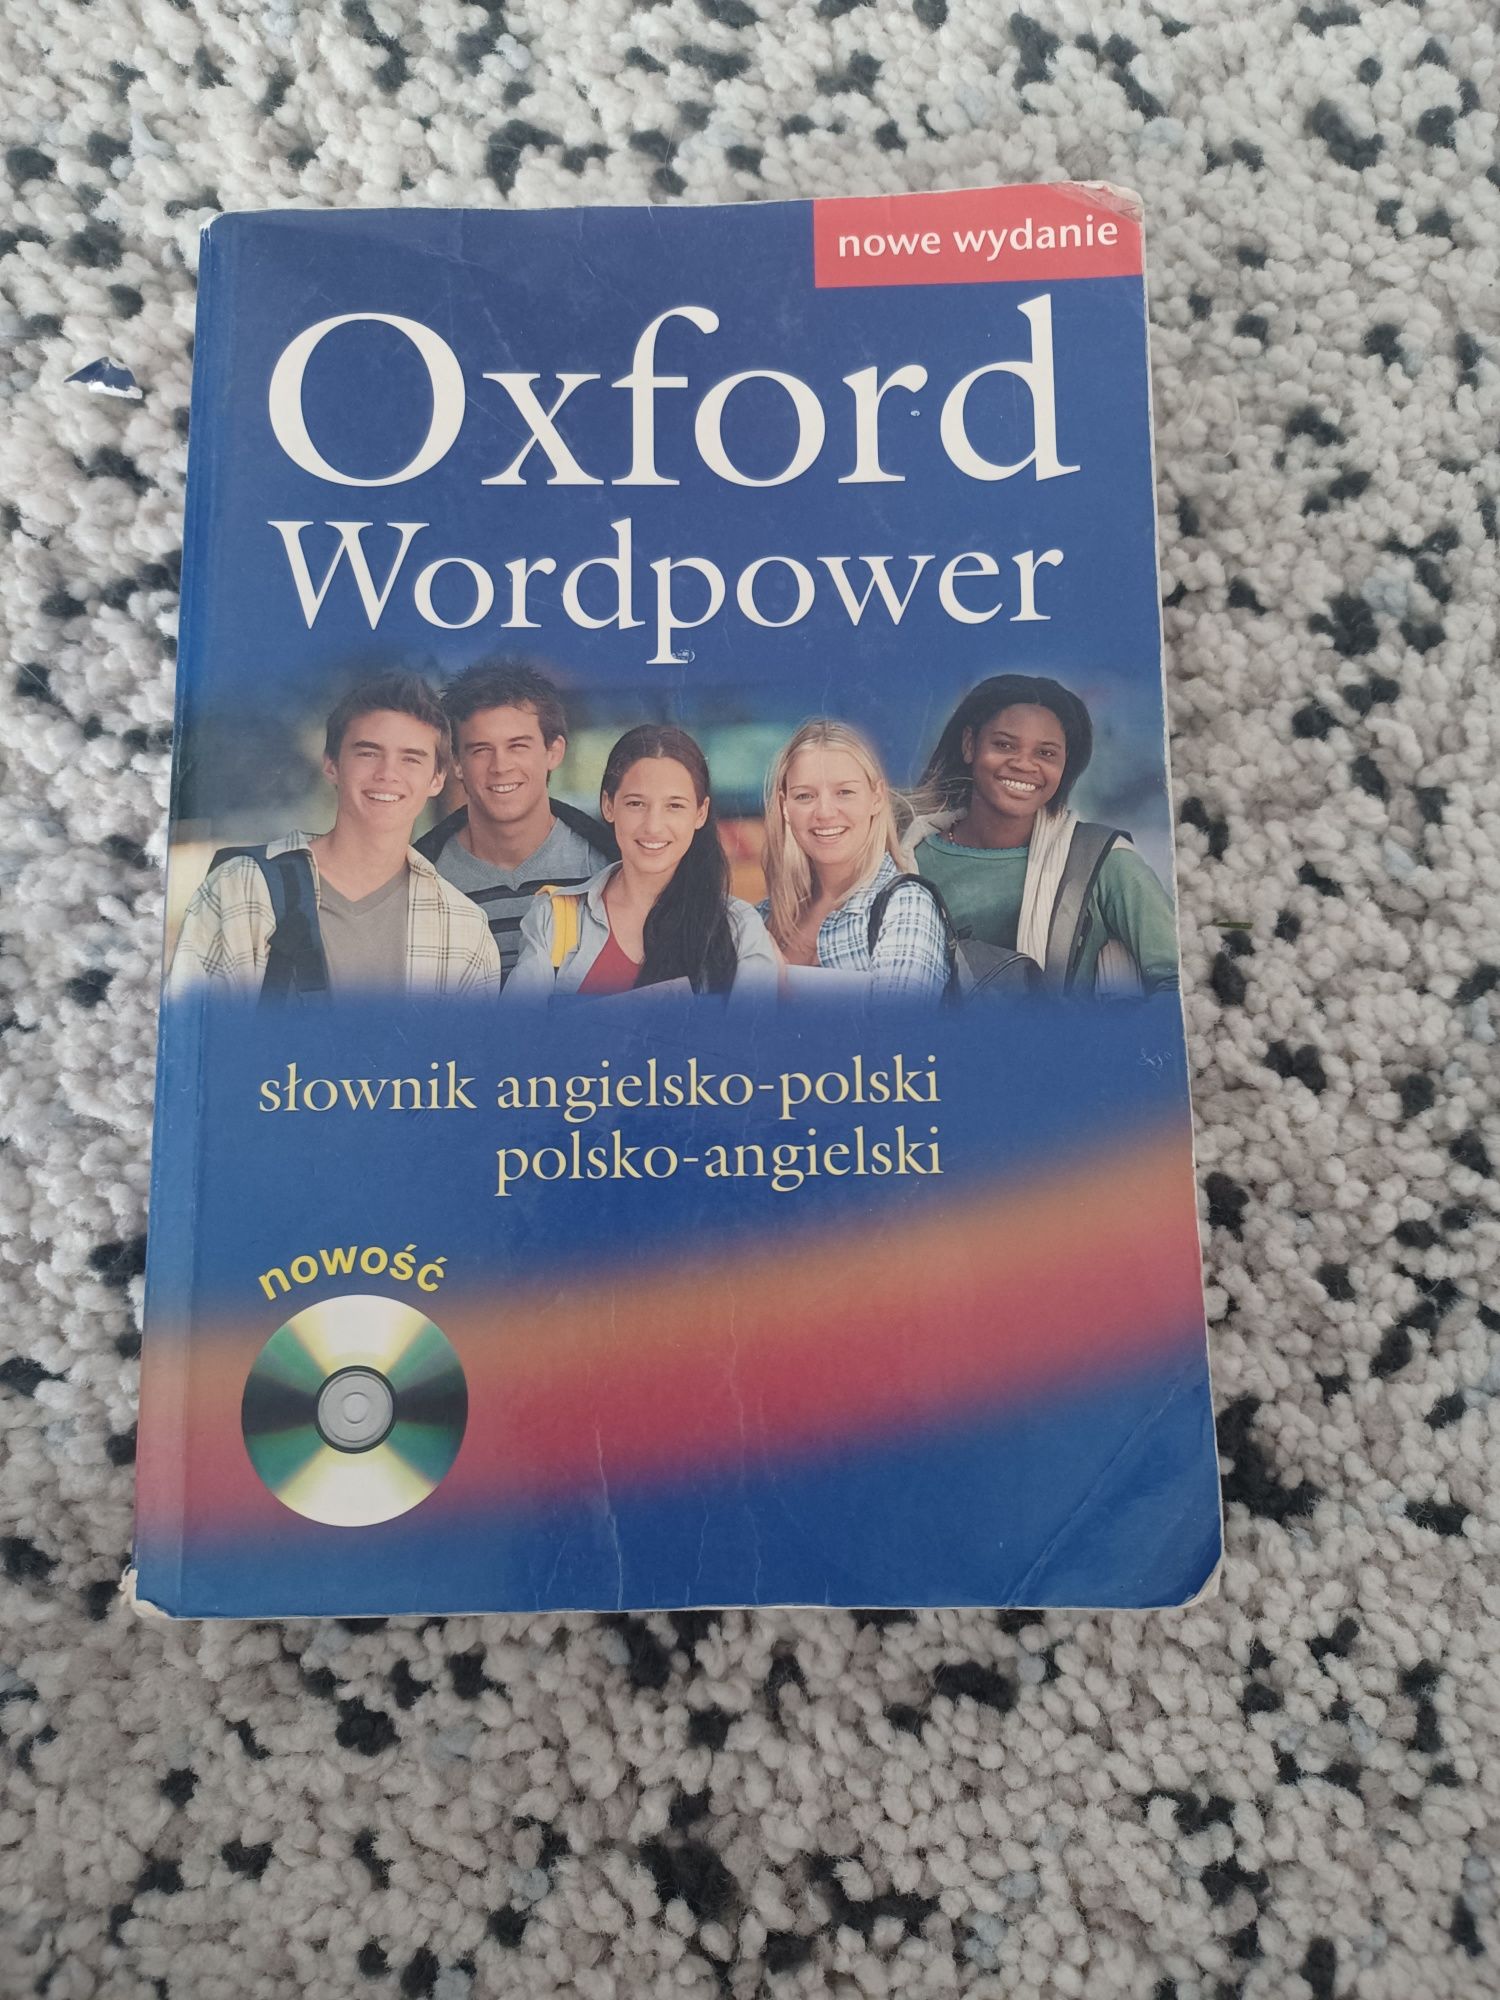 Słownik Oxword Wordpower